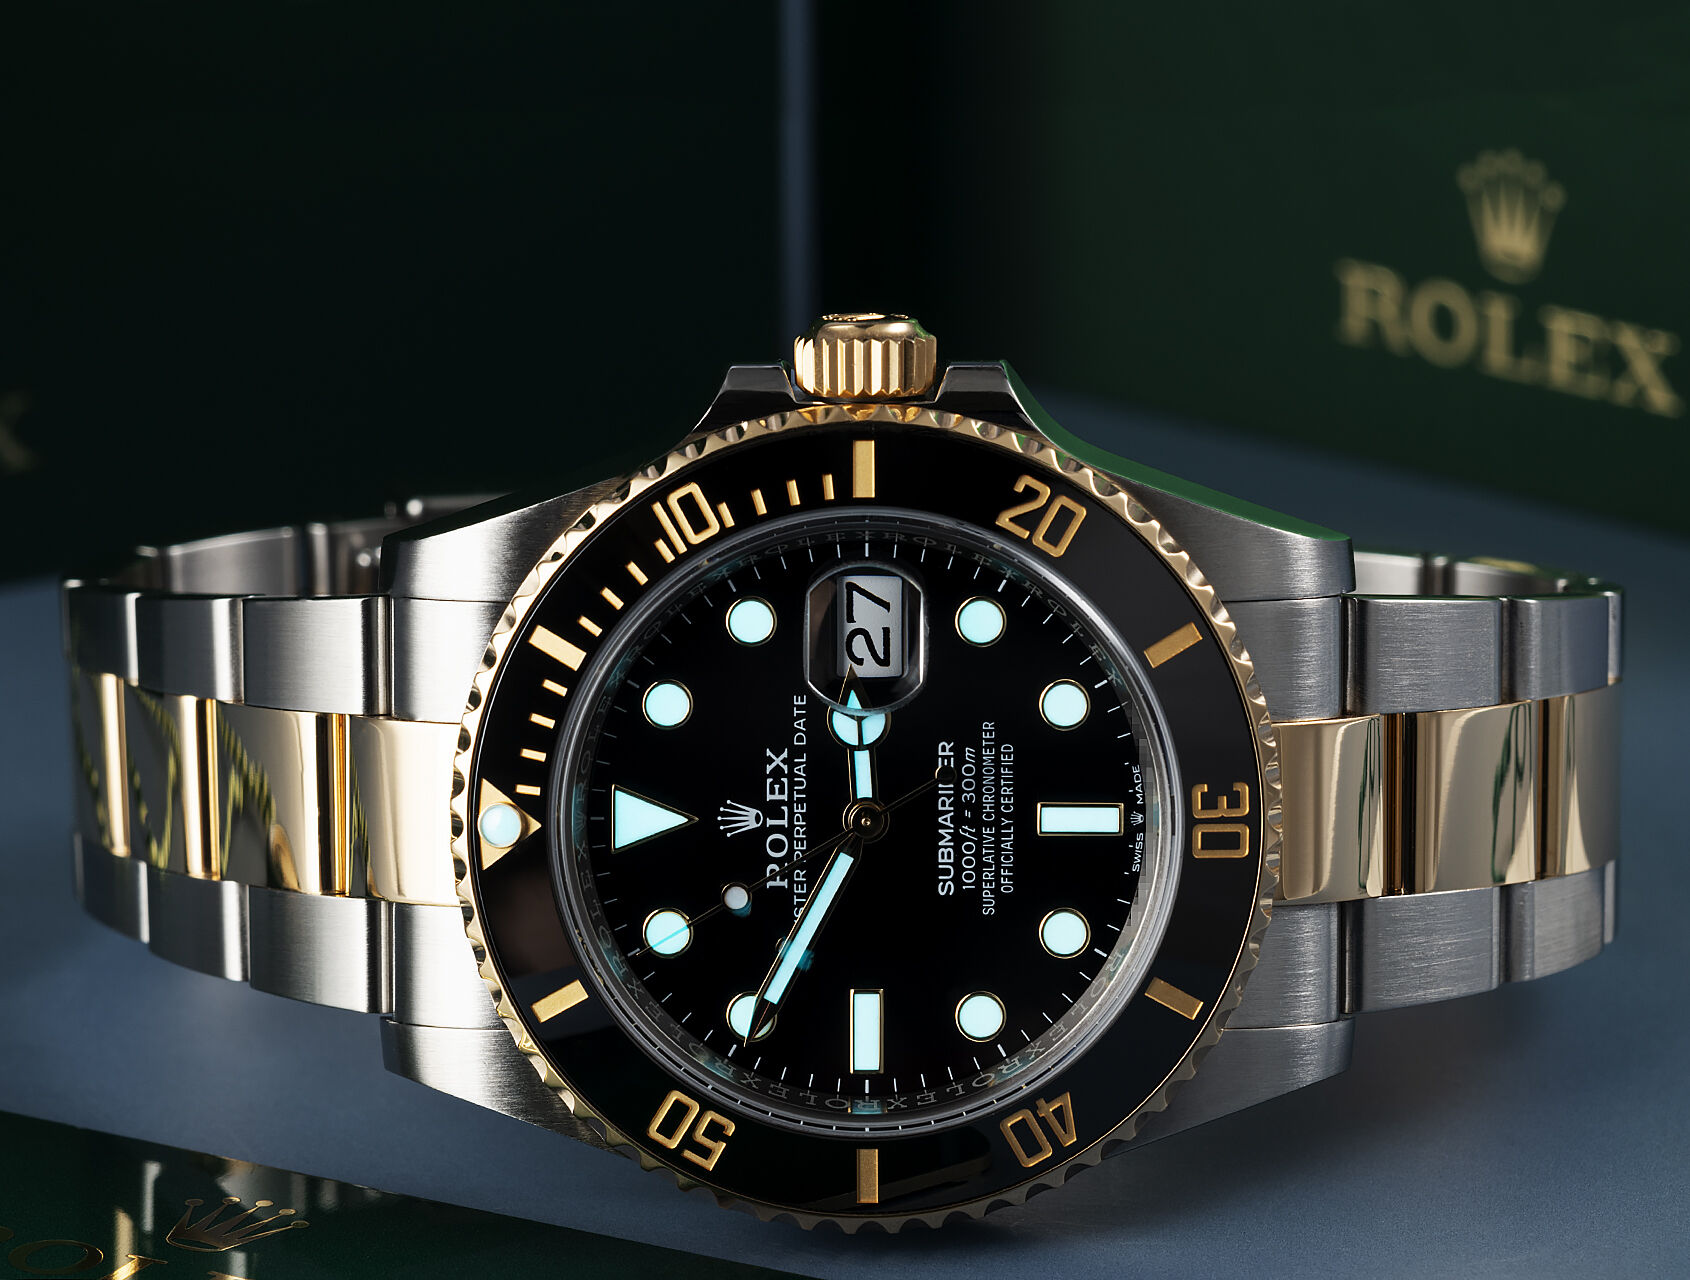 ref 126613LN | 126613LN - Box & Certificate | Rolex Submariner Date